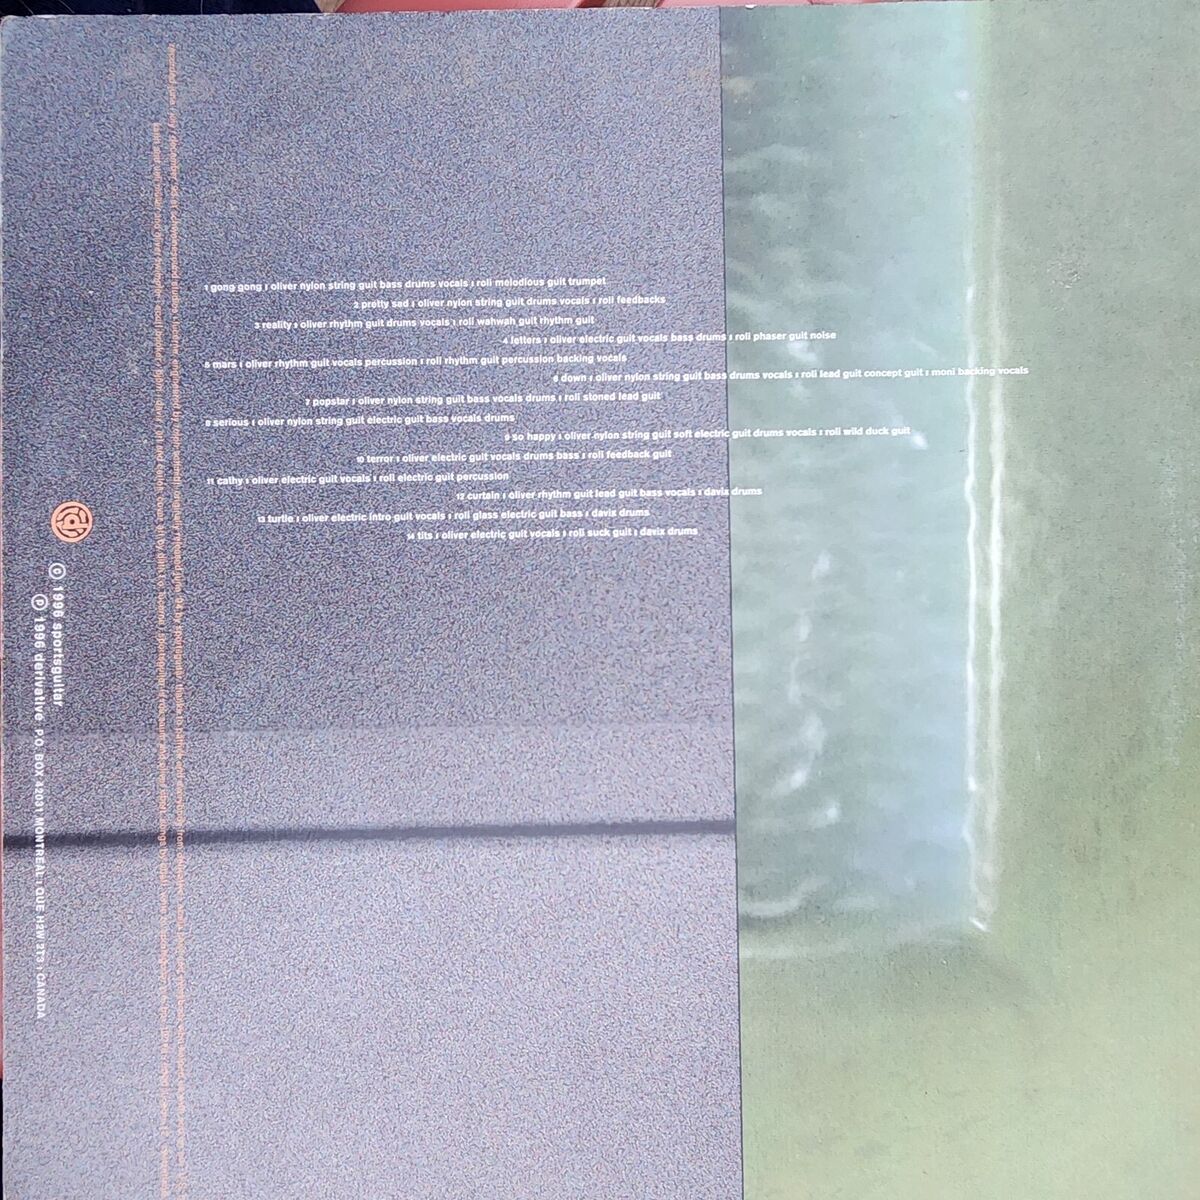 SPORTSGUITAR / fade/cliche LP derivative records 1996 pavement